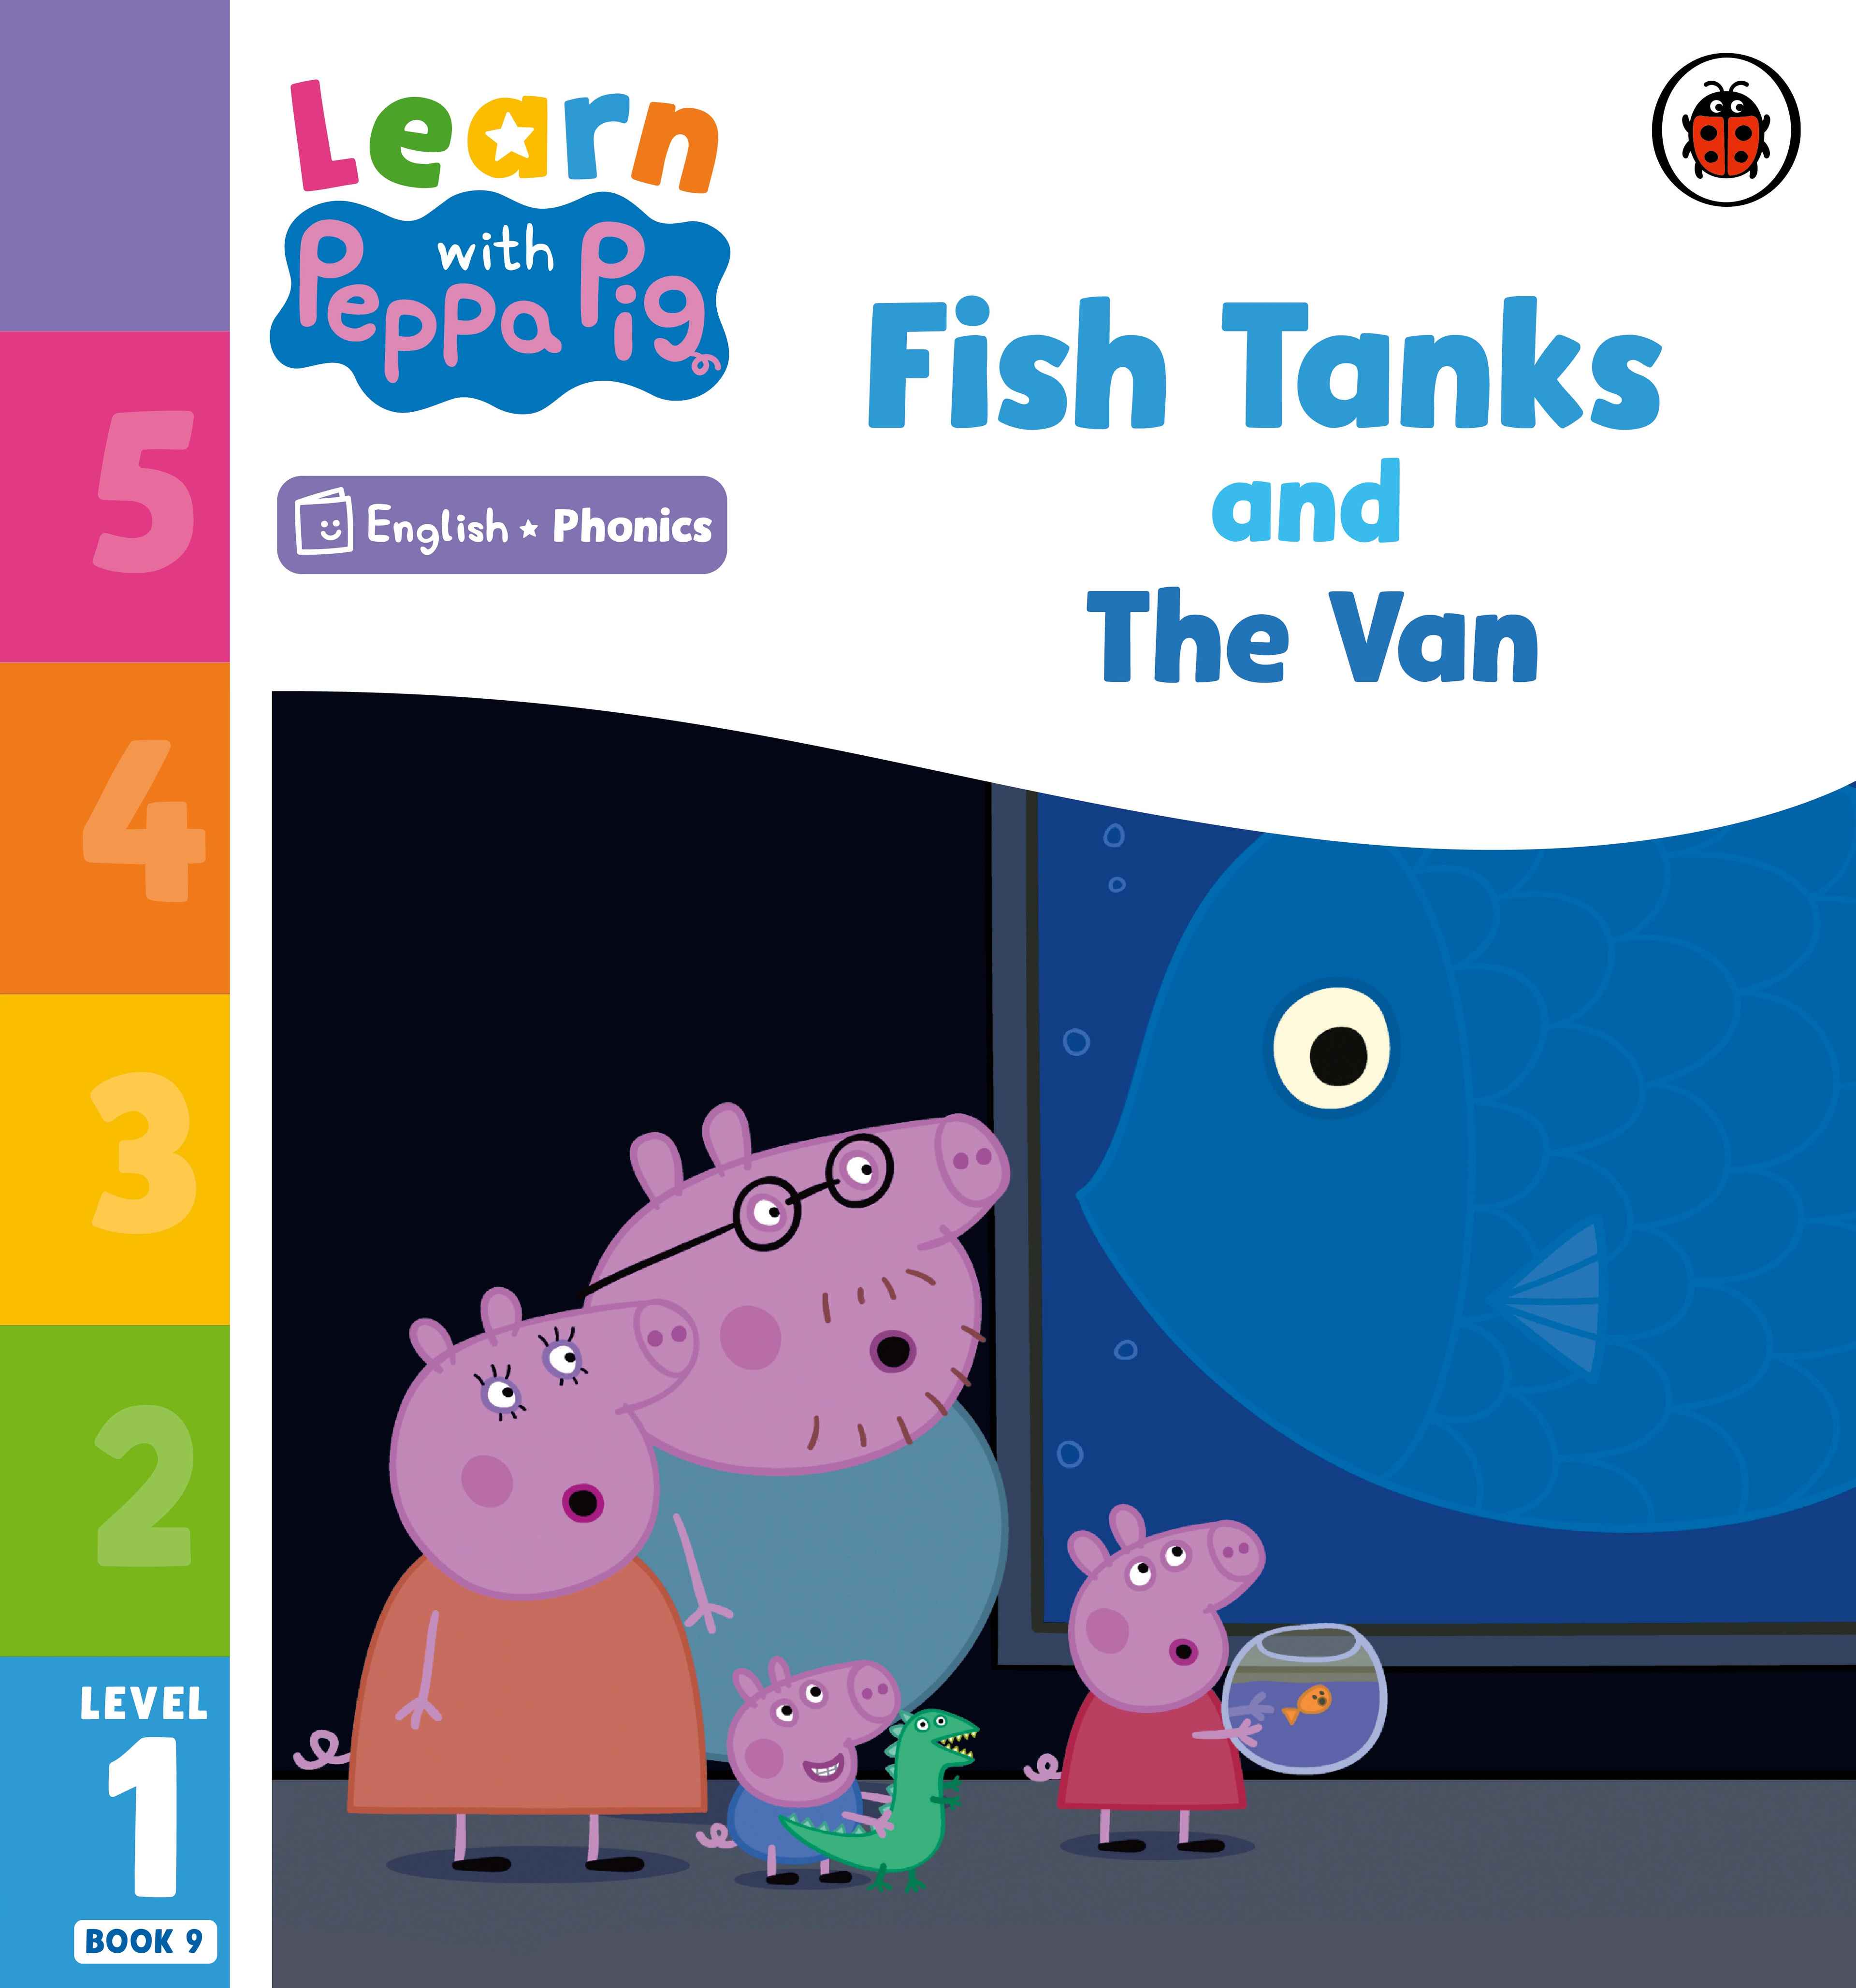 Fish Tanks and The Van